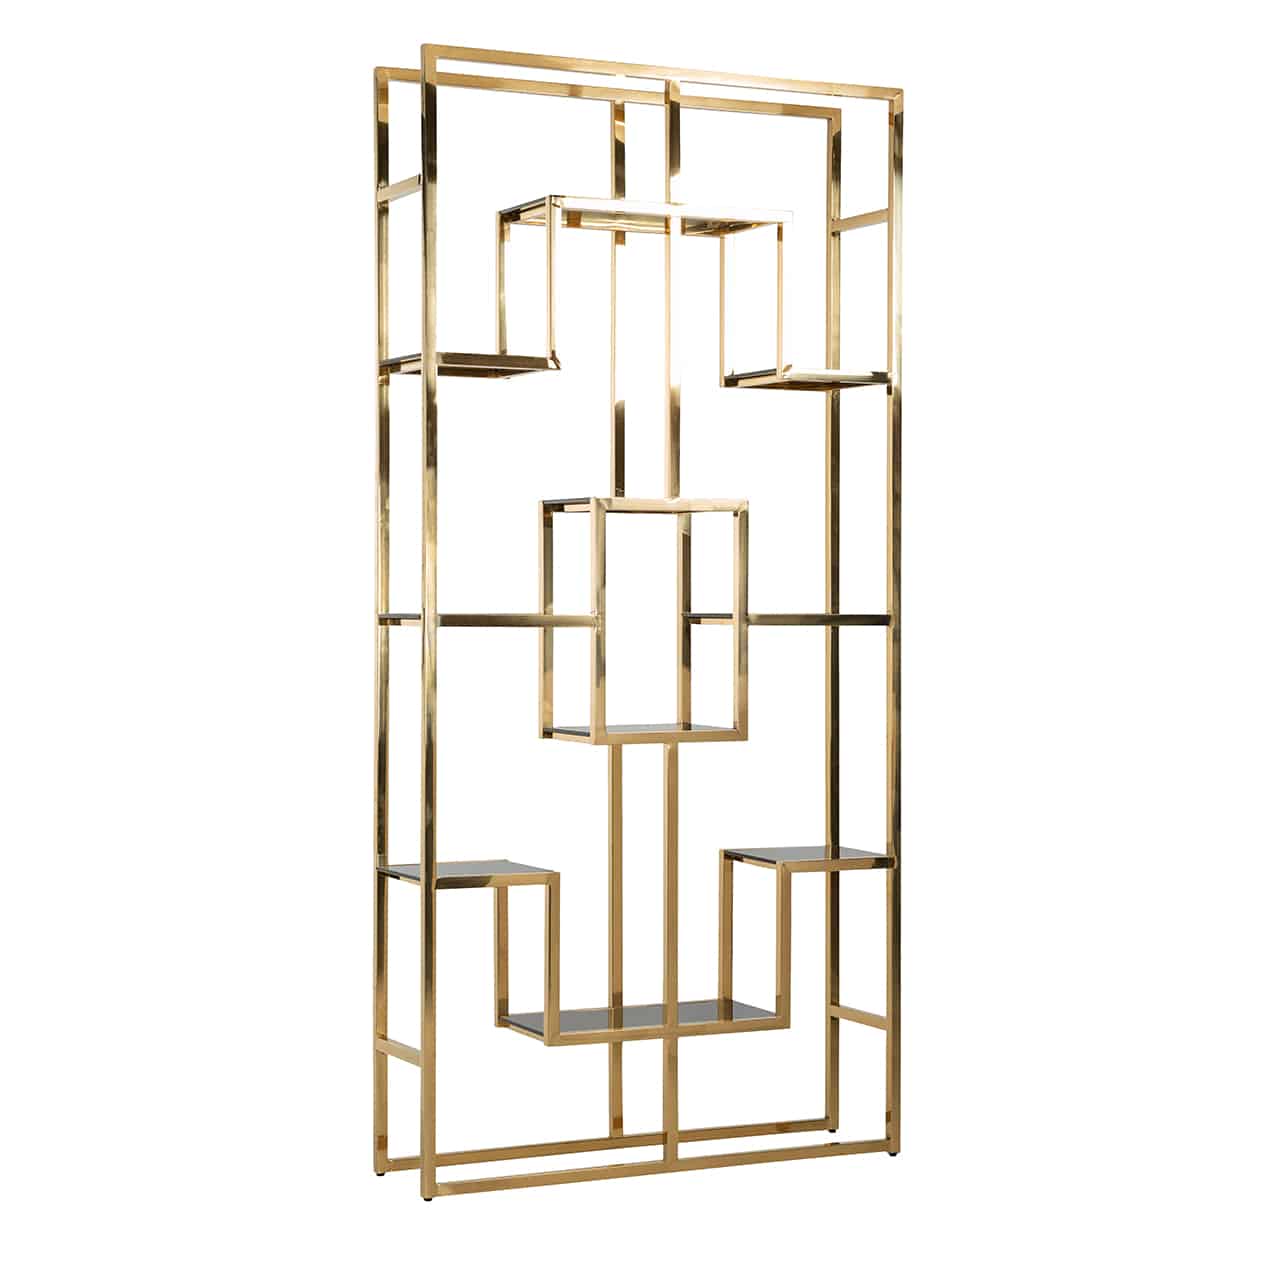 Modernes, filigranes Regal in gold; in einem hohen, Metallgestell sind in symmetrischen Abständen verschieden große Fachböden aus Glas angeordnet.  